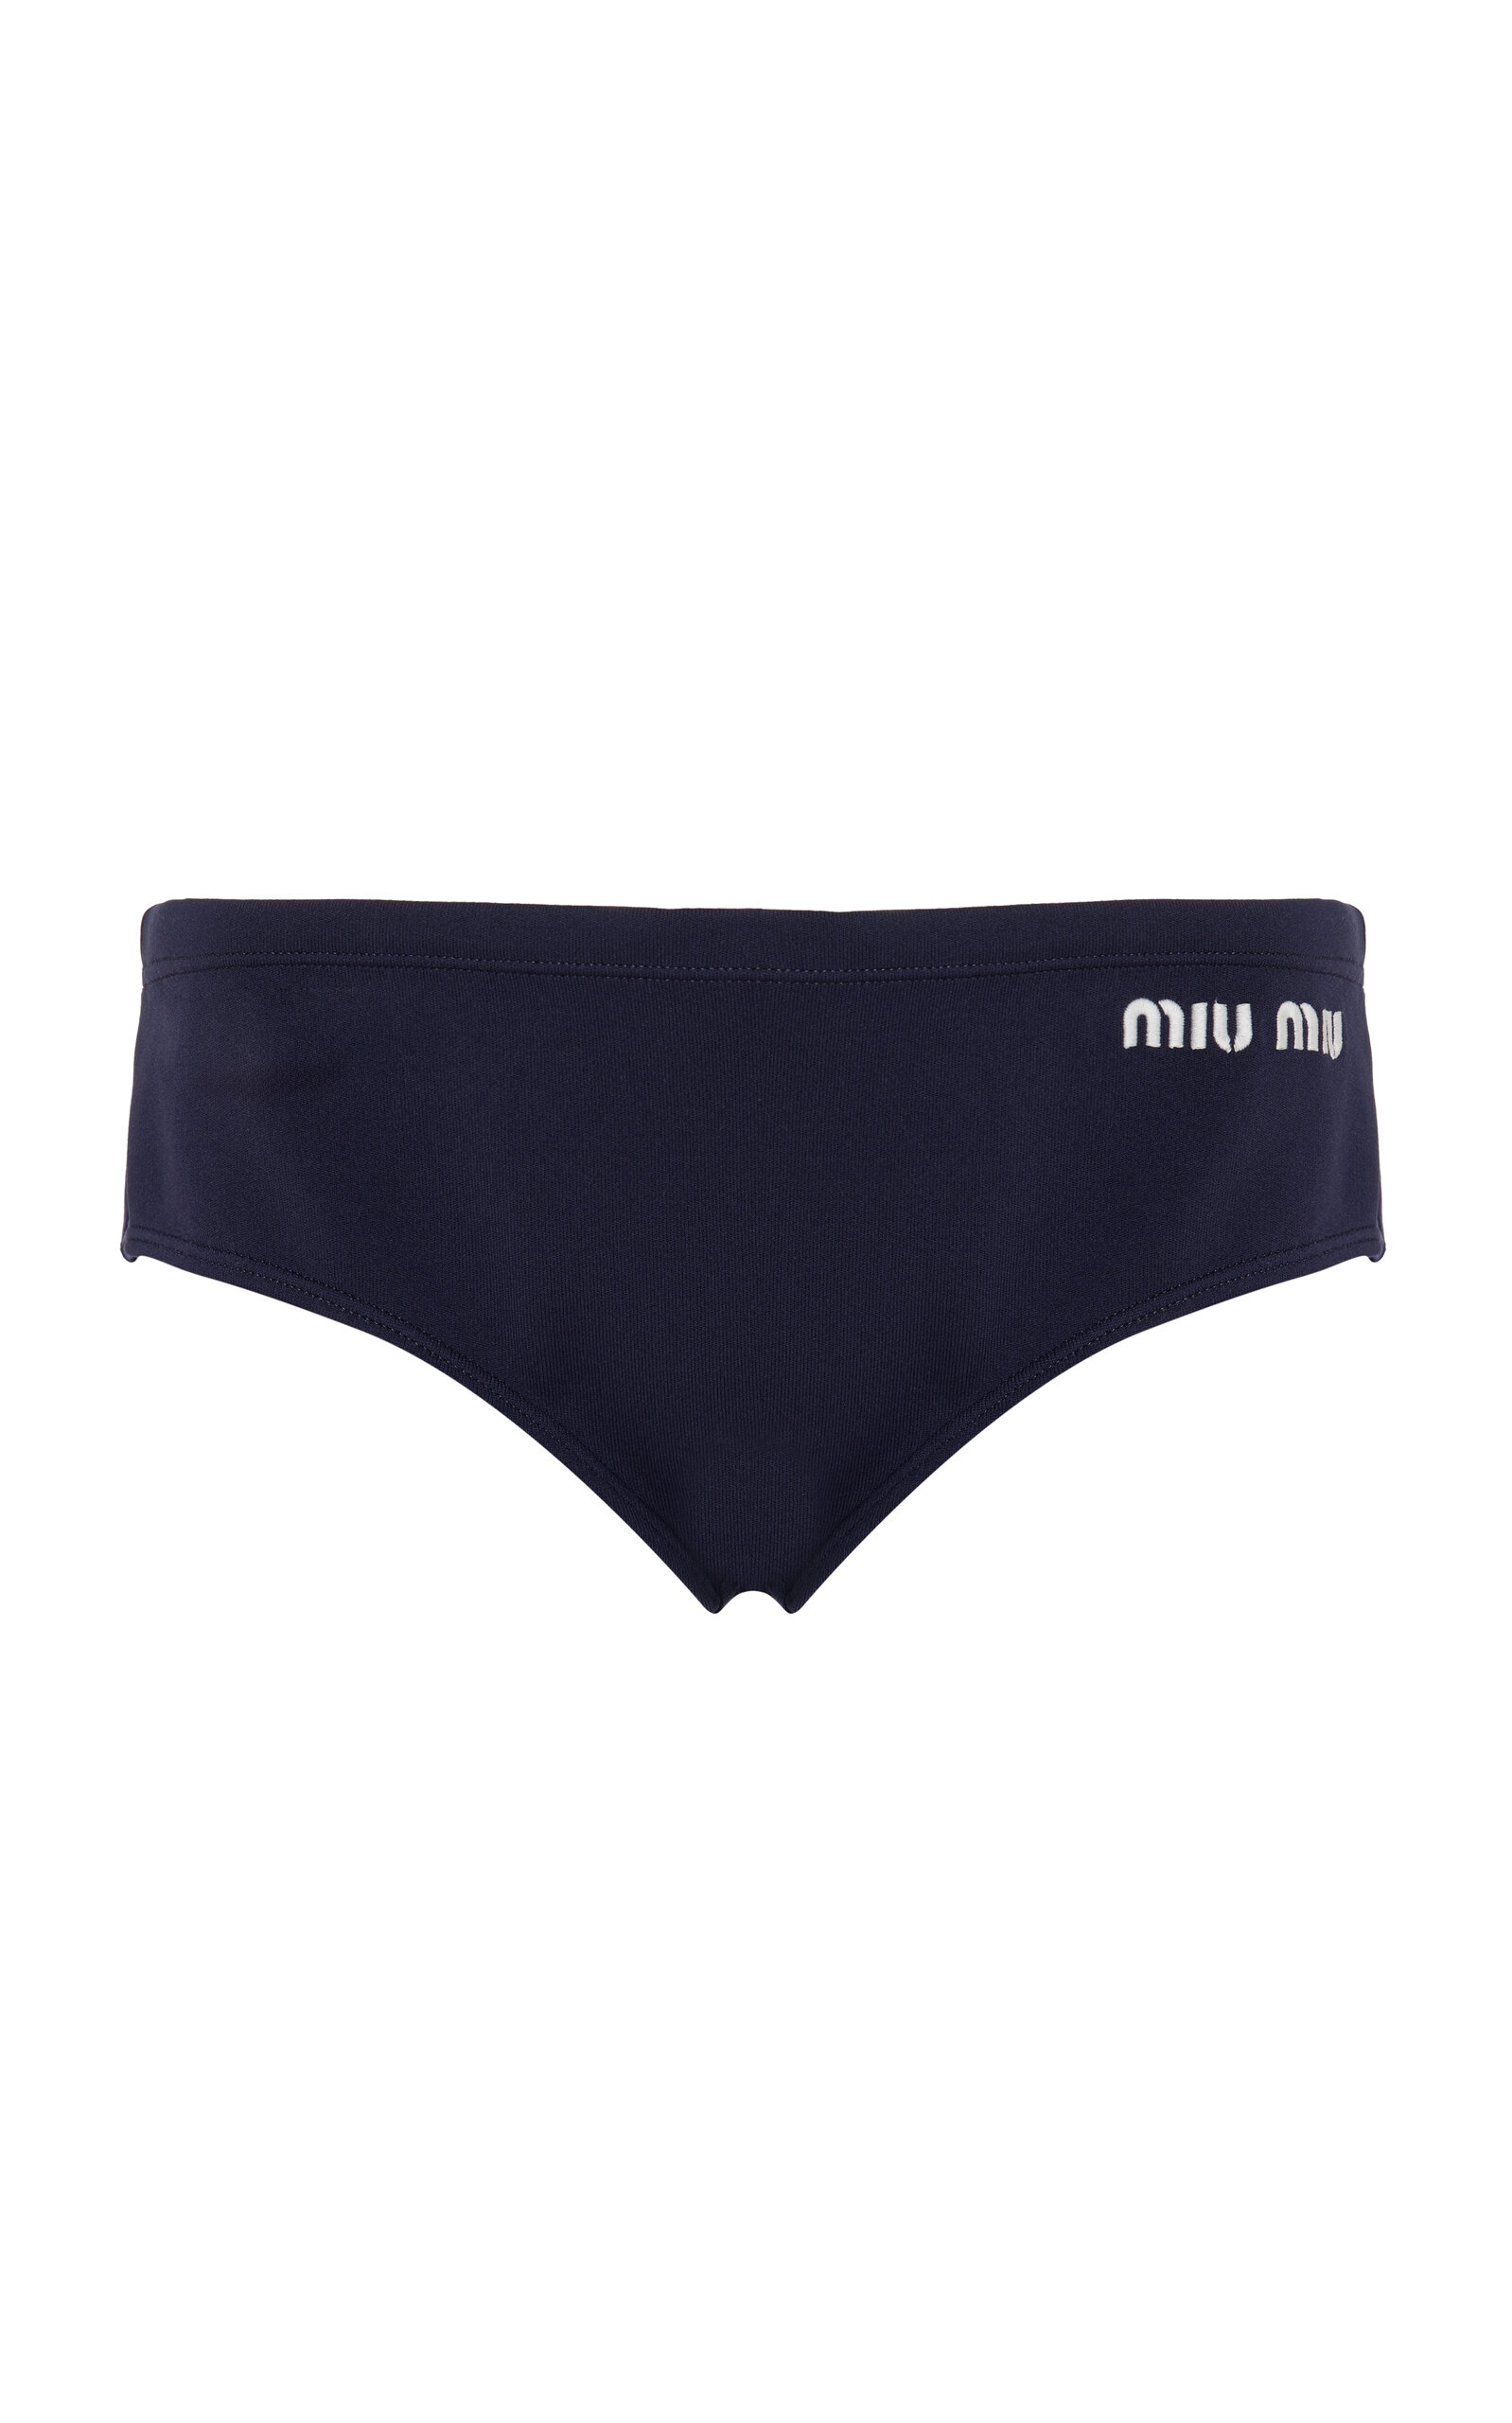 Miu Miu Ribbed Knit Boxer Shorts - Farfetch